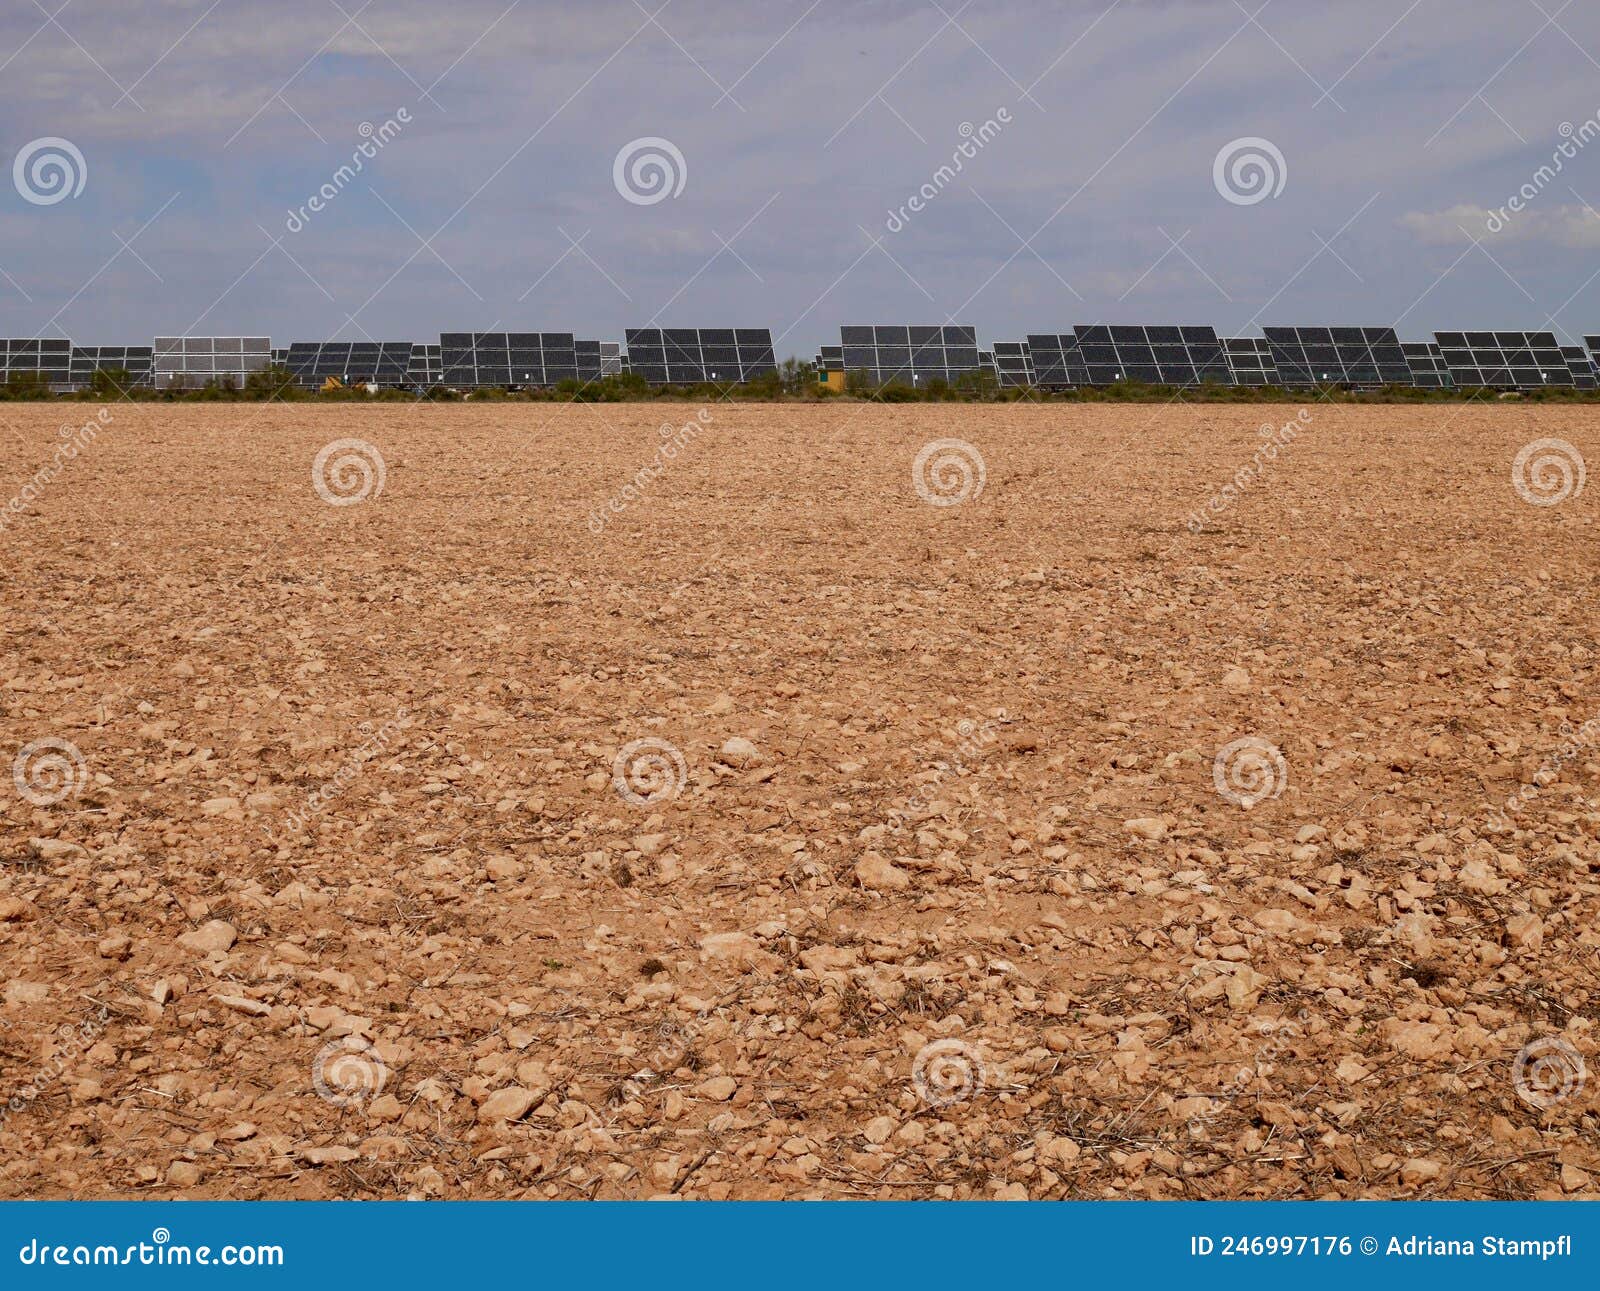 solar farm on red soil against blue sky in castile la mancha, spain.